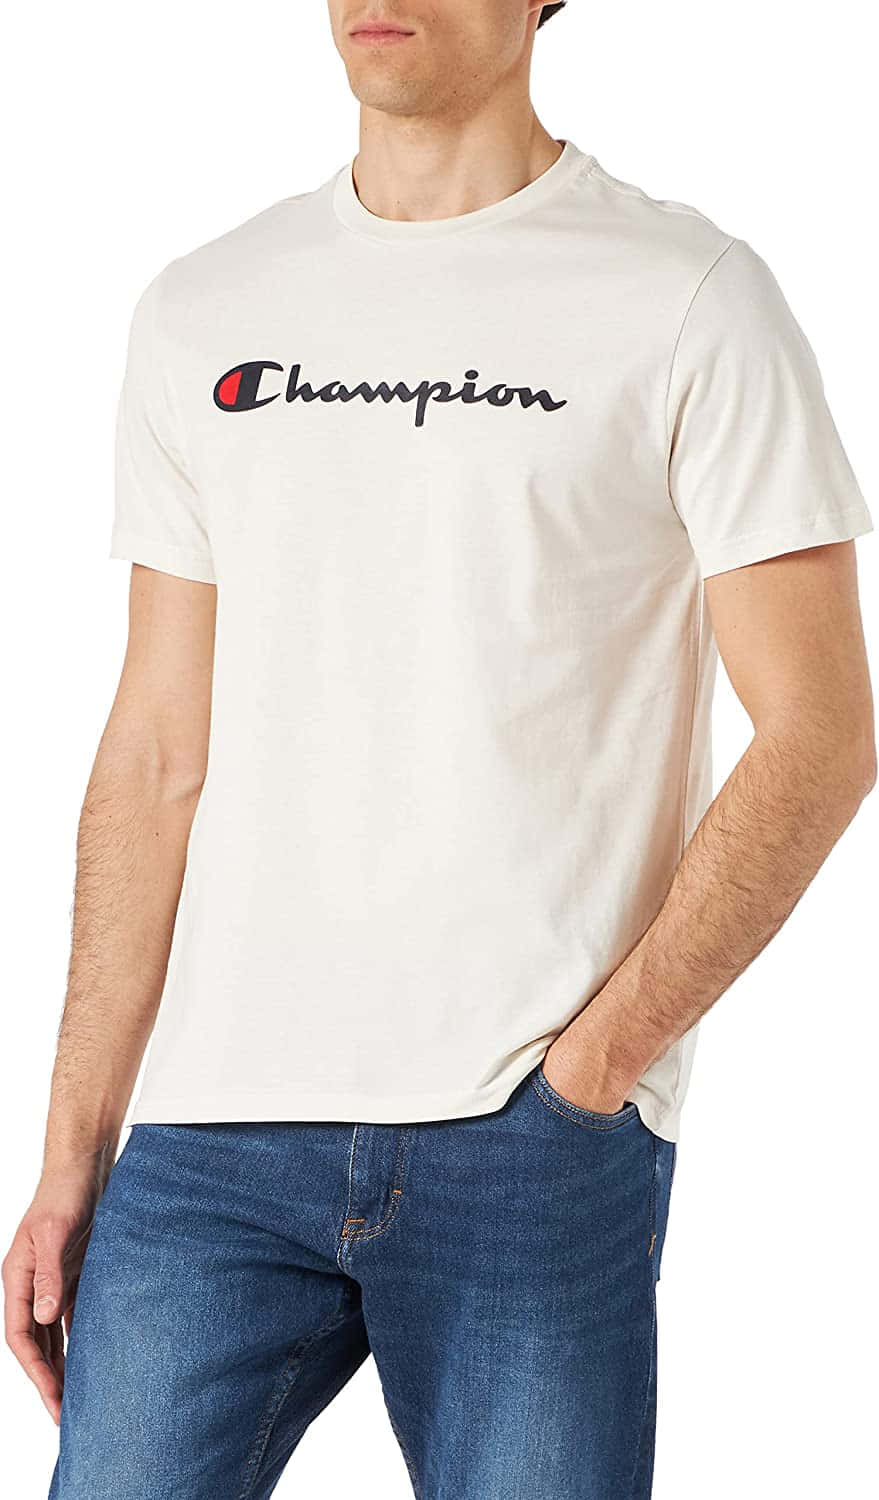 Championt-shirt In Weiß